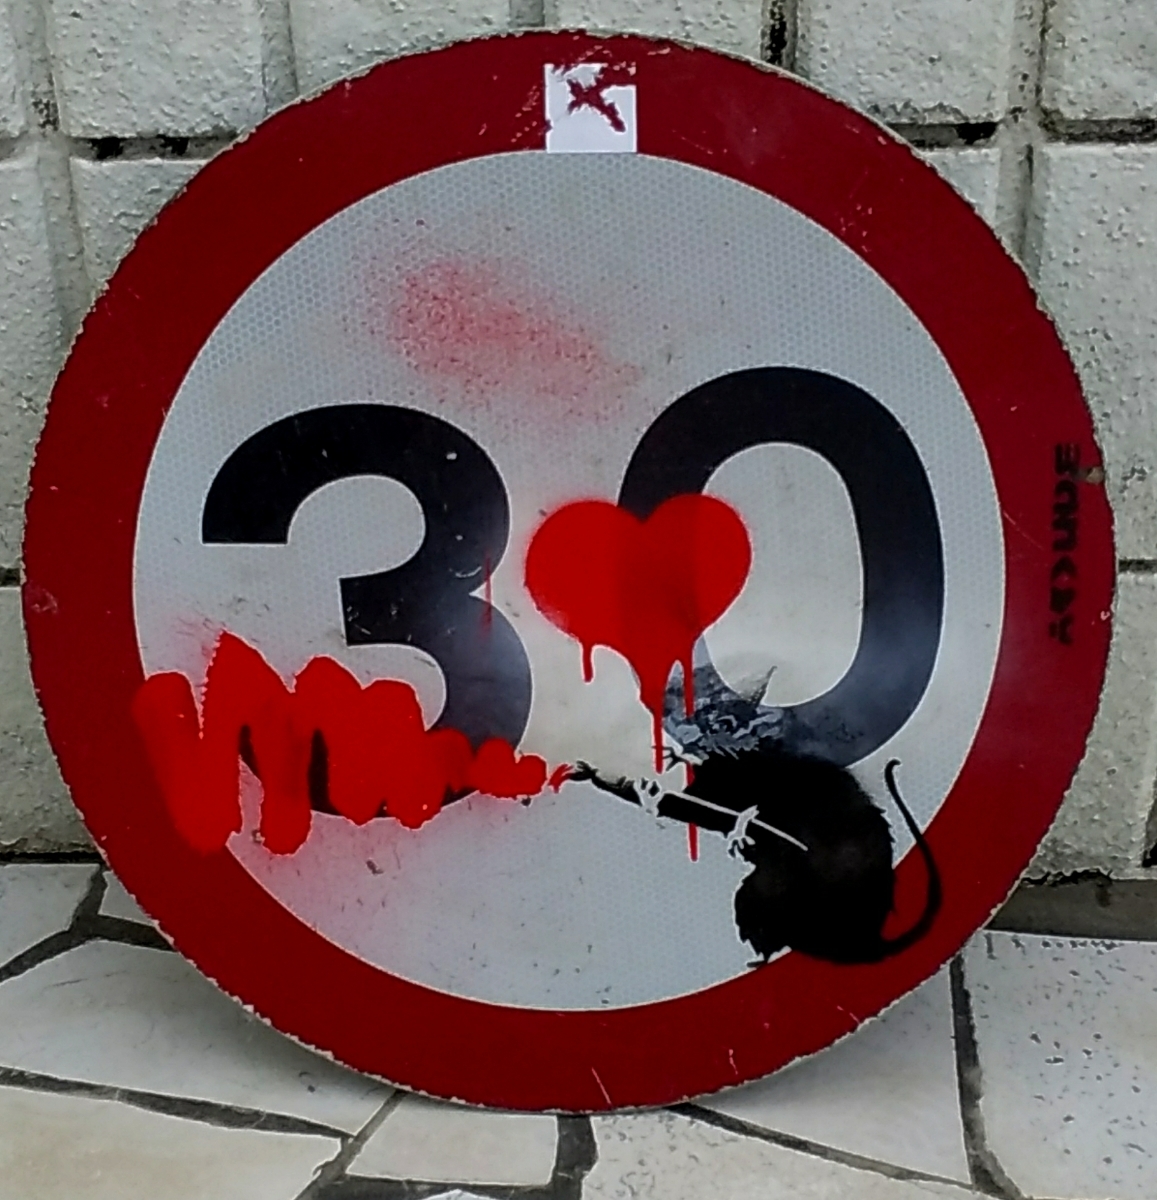 Banksy(バンクシー)のロードサイン『Love Rat』道路標識 2000年頃からロンドンのプライベートコレクター所有のストリートアート作品です